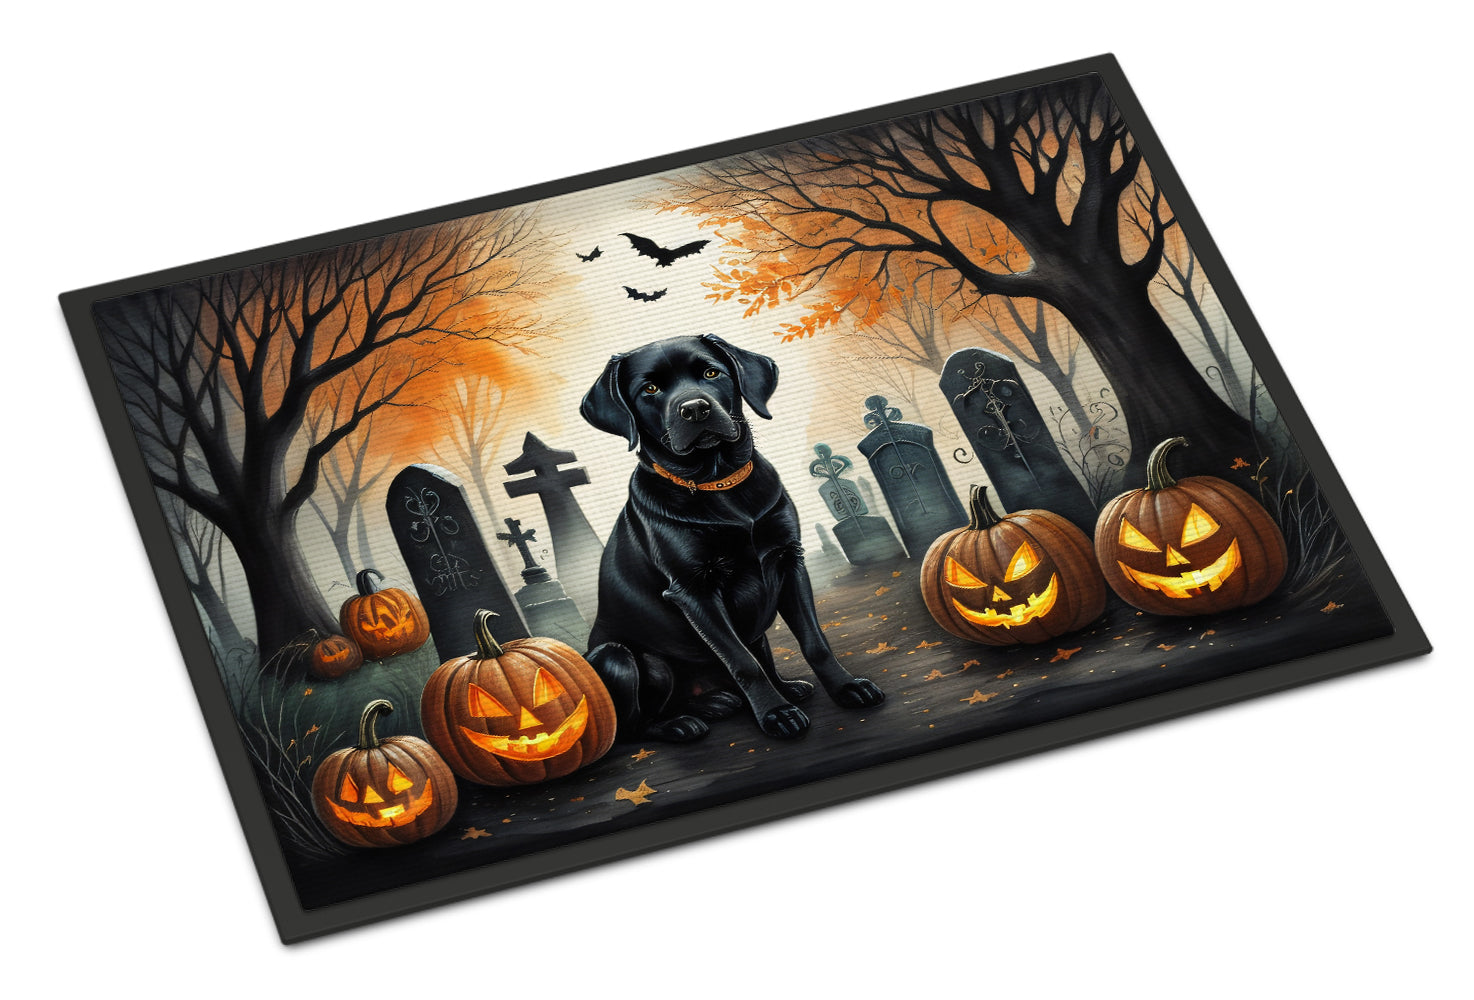 Buy this Black Labrador Retriever Spooky Halloween Doormat 18x27